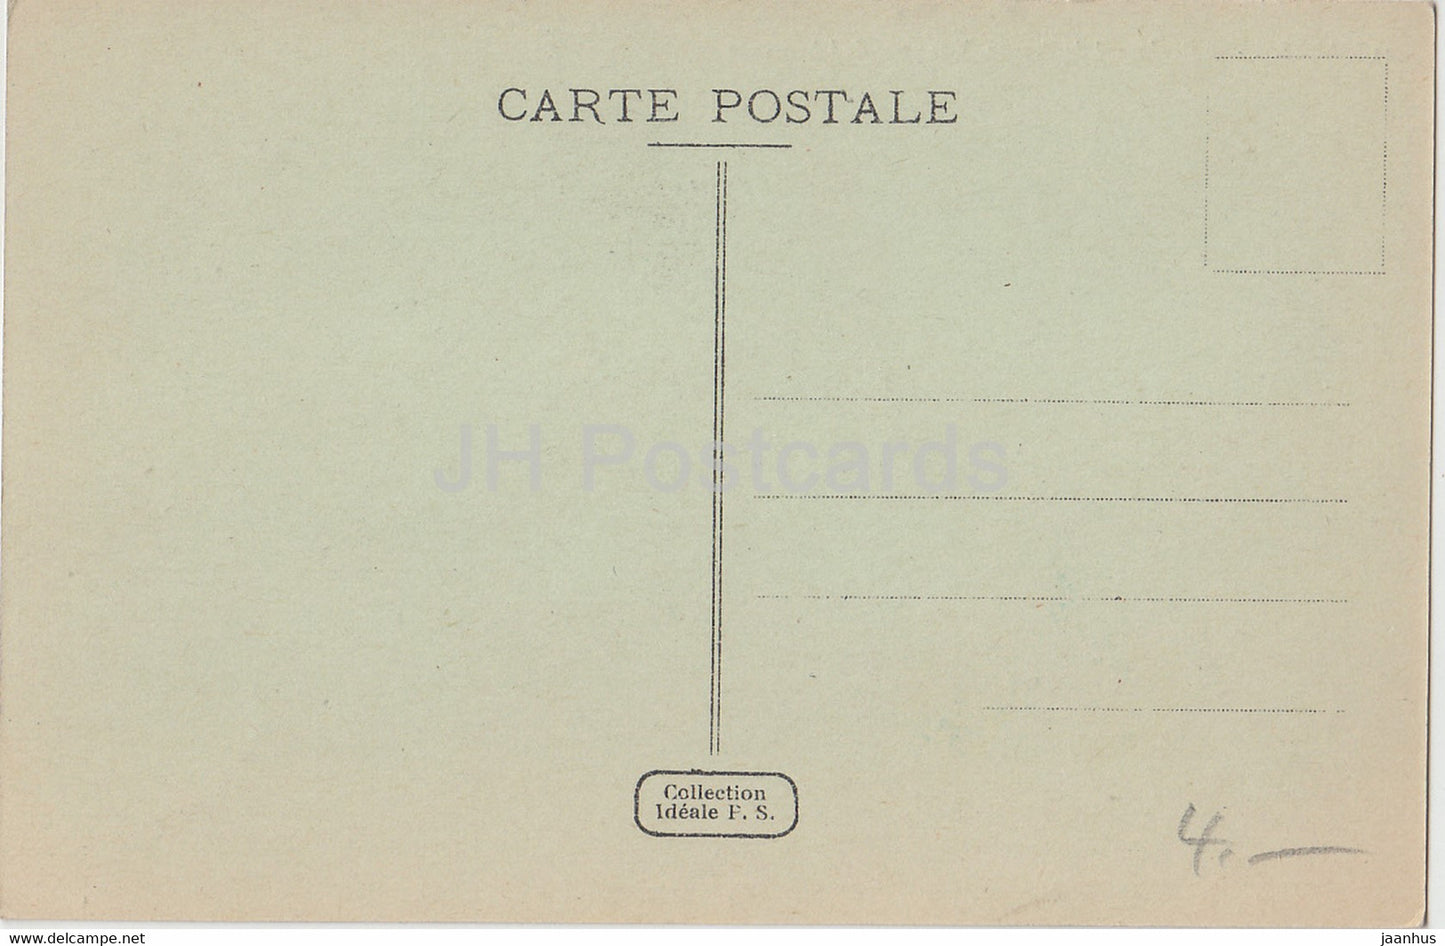 Alger - Alger - Le Boulevard de France - Vue prise de l'Amiraute - voilier - 41 - carte postale ancienne - Algérie - inutilisée